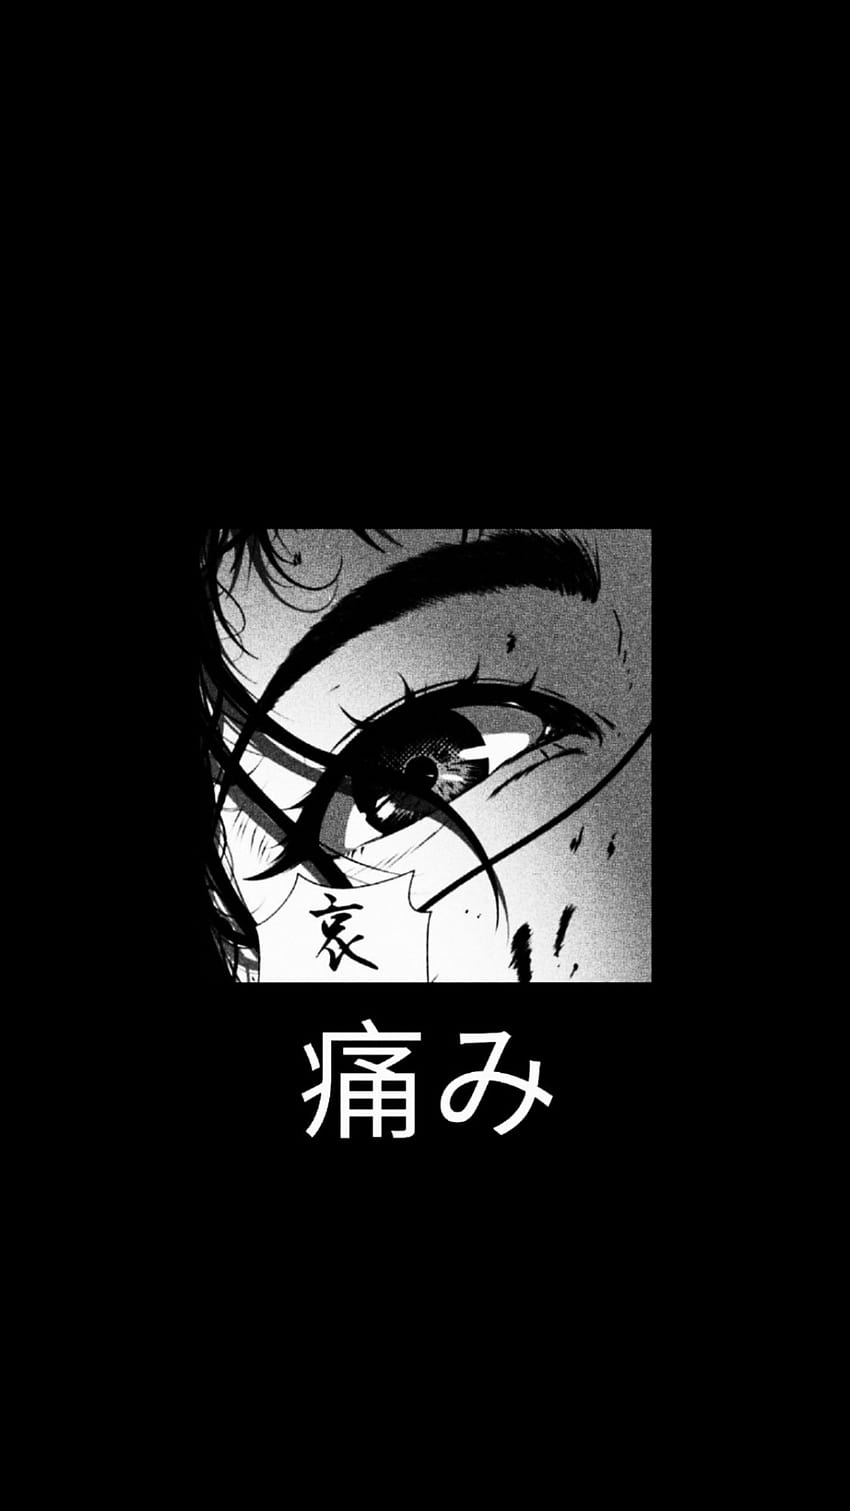 Dark Anime Aesthetic Wallpapers on WallpaperDog